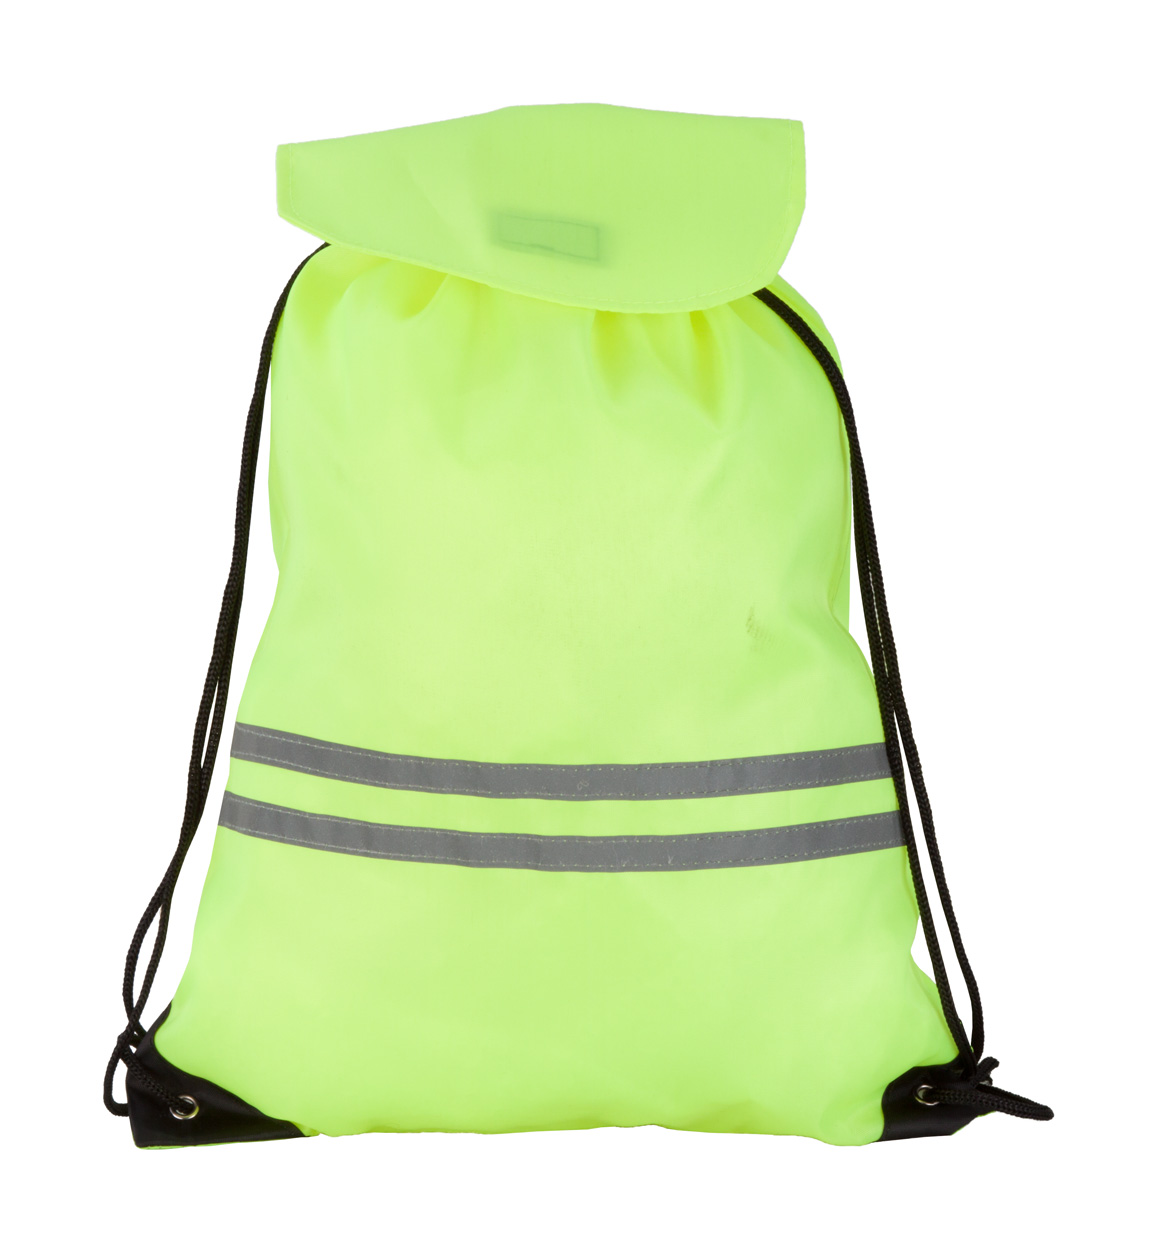 Stahovací batoh CARRYLIGHT s reflexními pruhy - bezpečnostní žlutá